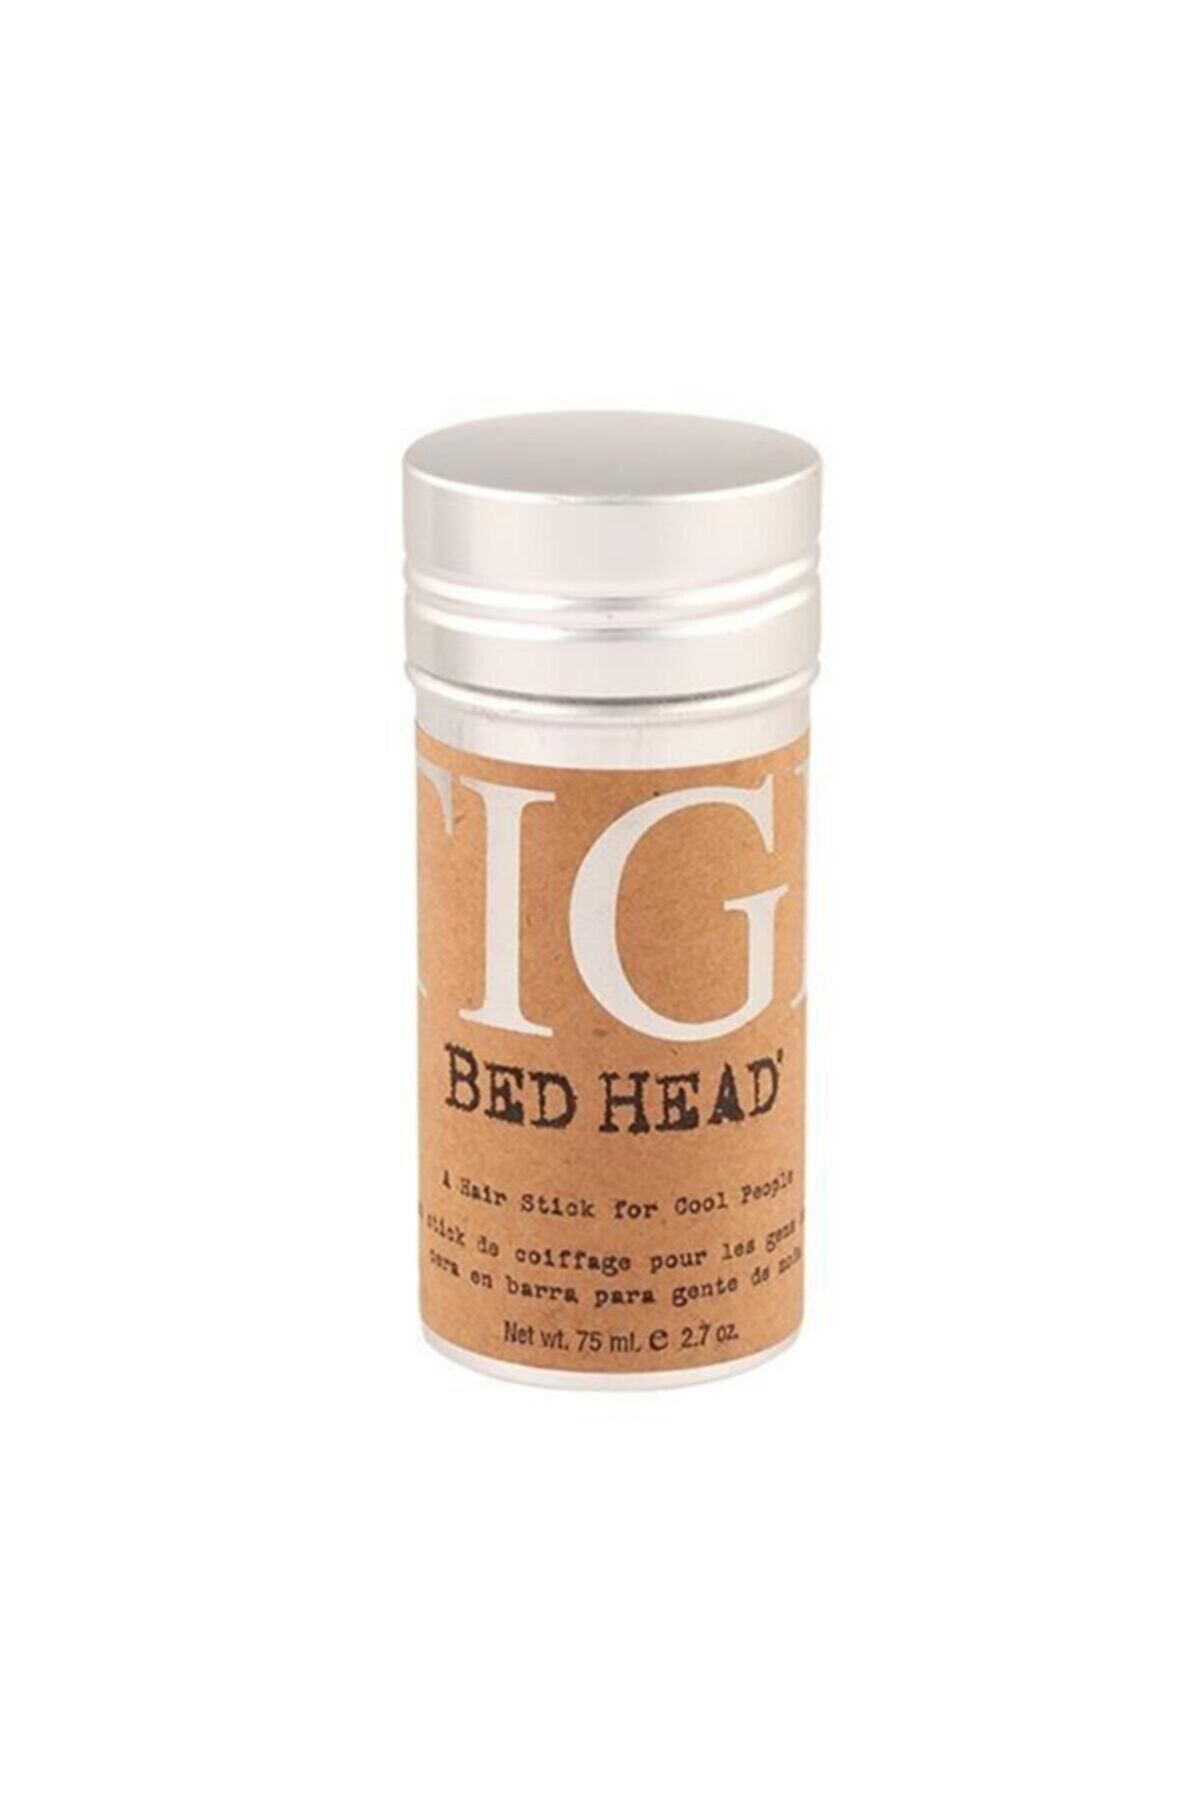 Tigi Bed Head Bed Head Stick Wax 75 ml